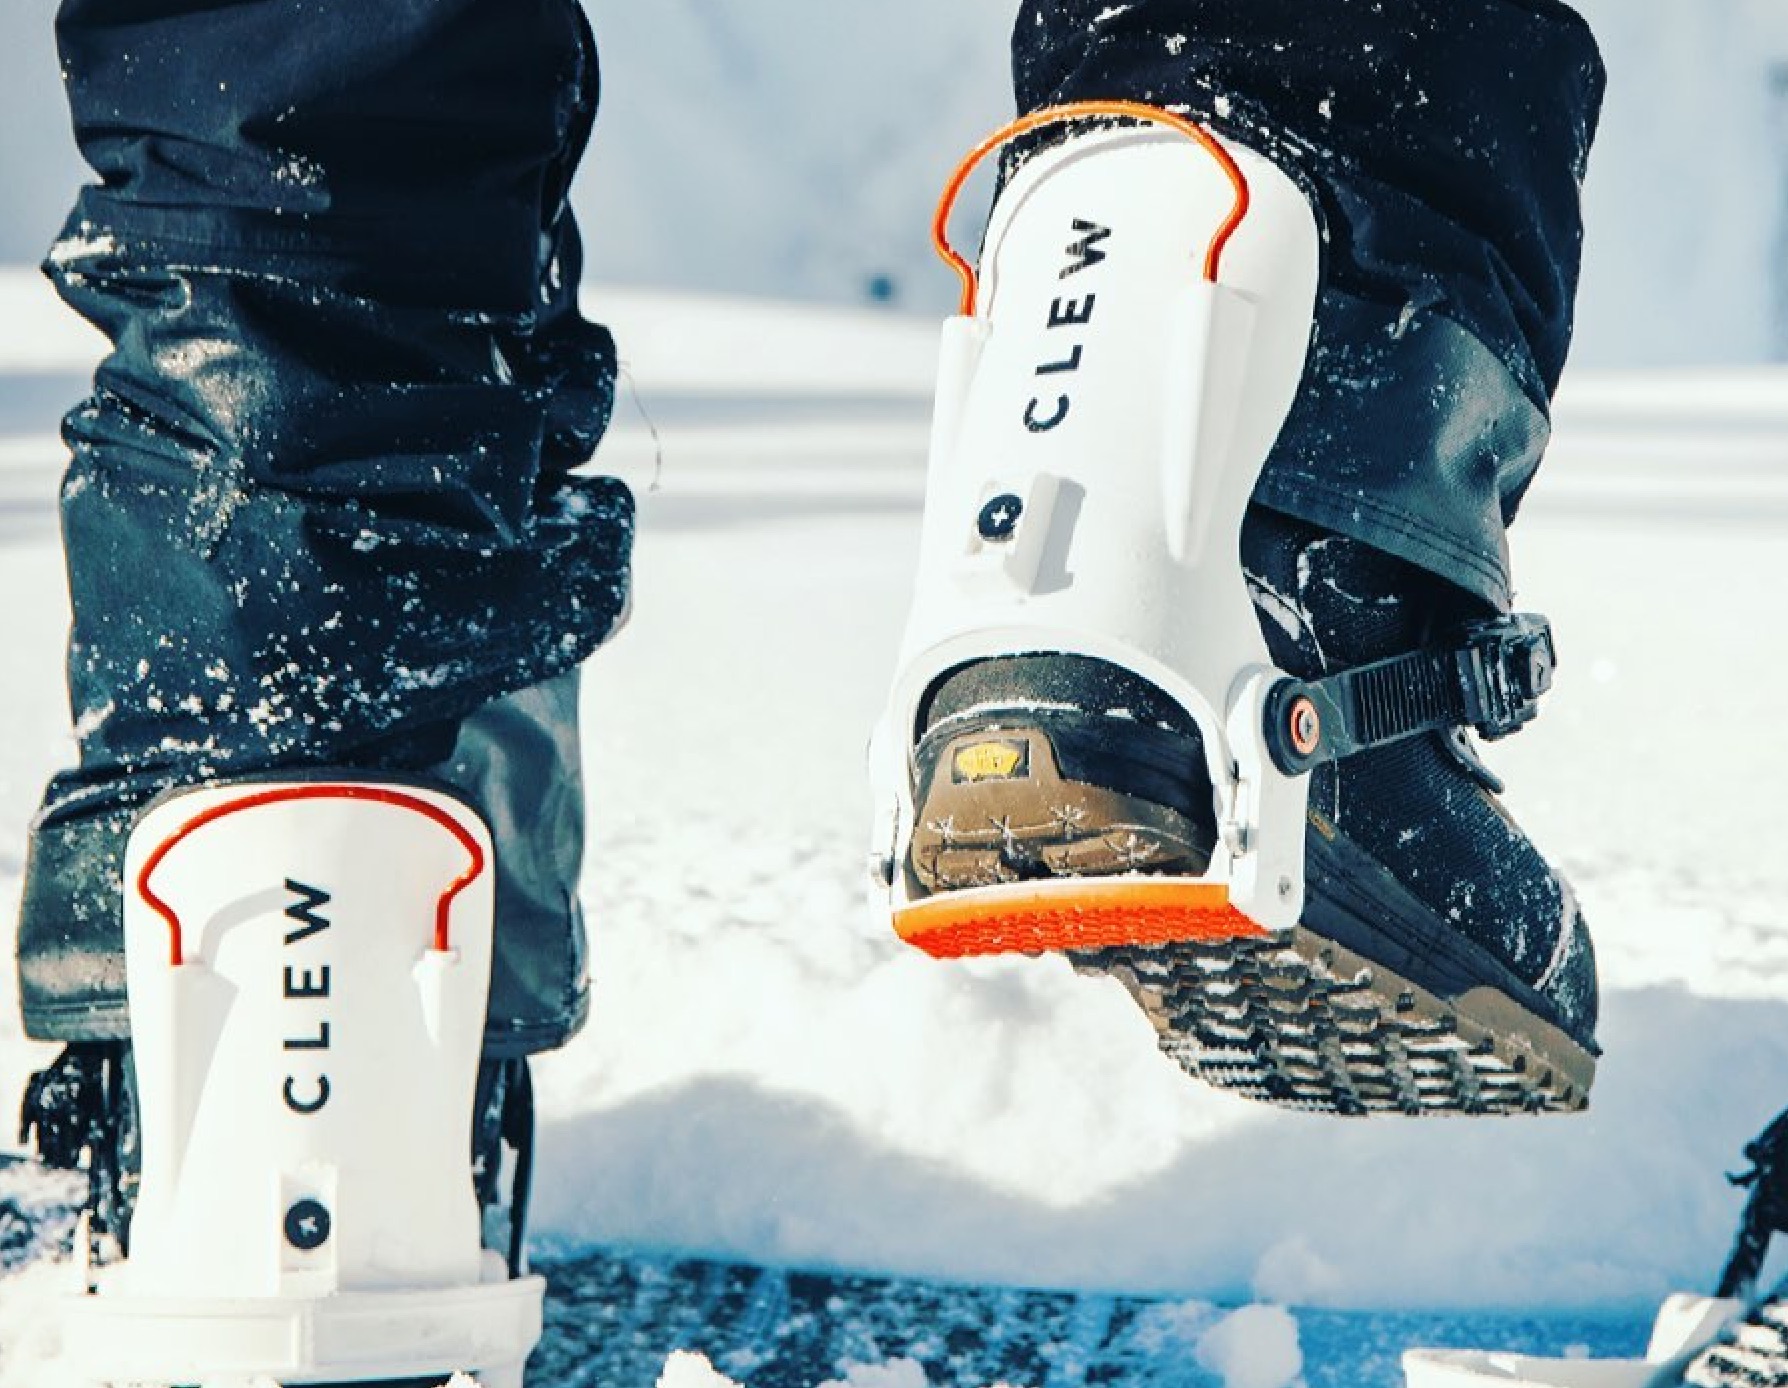 NEW German Engineered Step-In Snowboard Binding